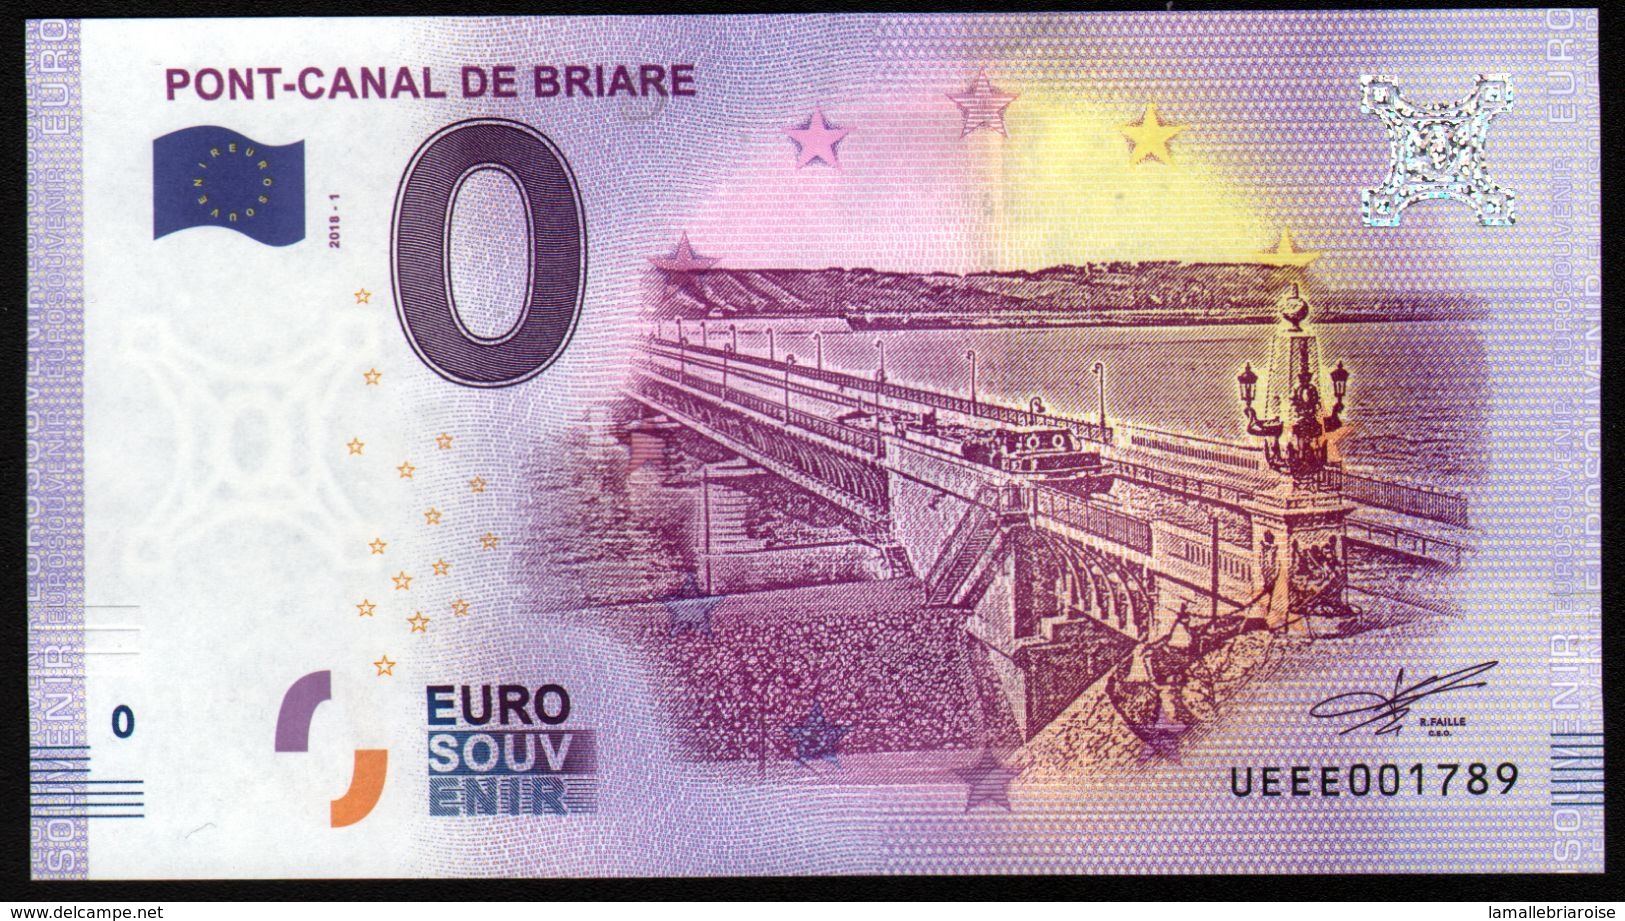 France - Billet Touristique 0 Euro 2018 N°001789 (UEEE003300/5000) - PONT-CANAL DE BRIARE - Essais Privés / Non-officiels